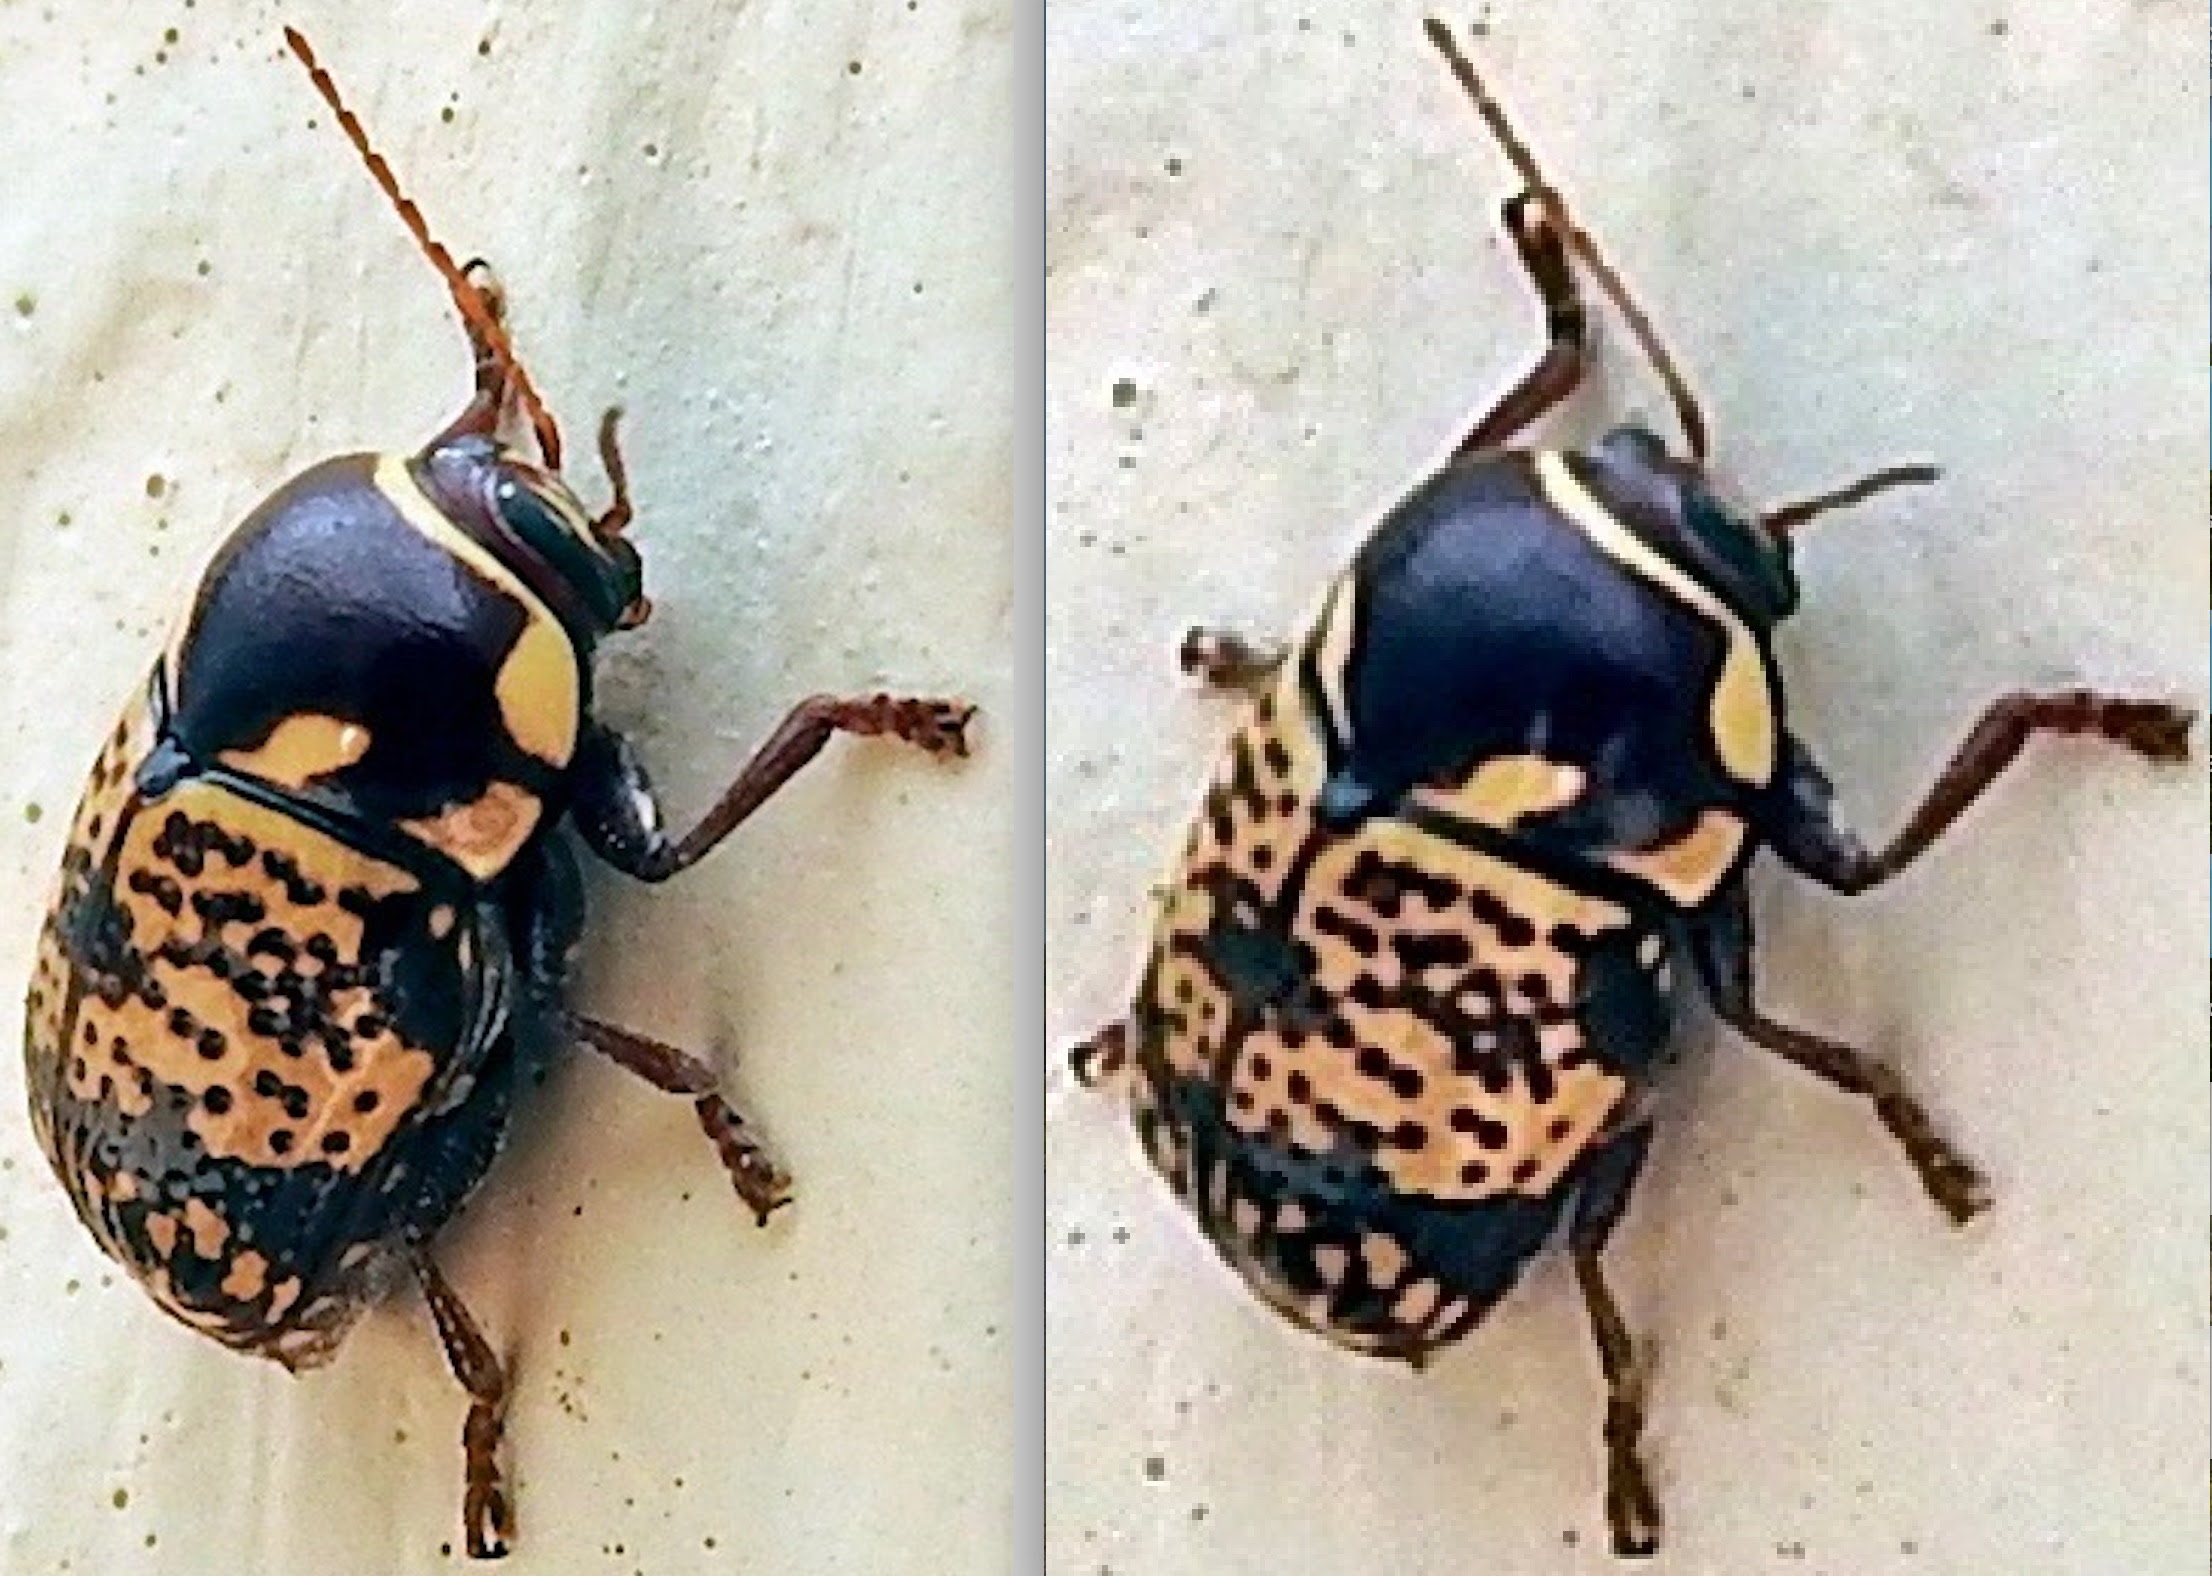 maycintadamayantixibb: Beetle With One Yellow Spot On Back